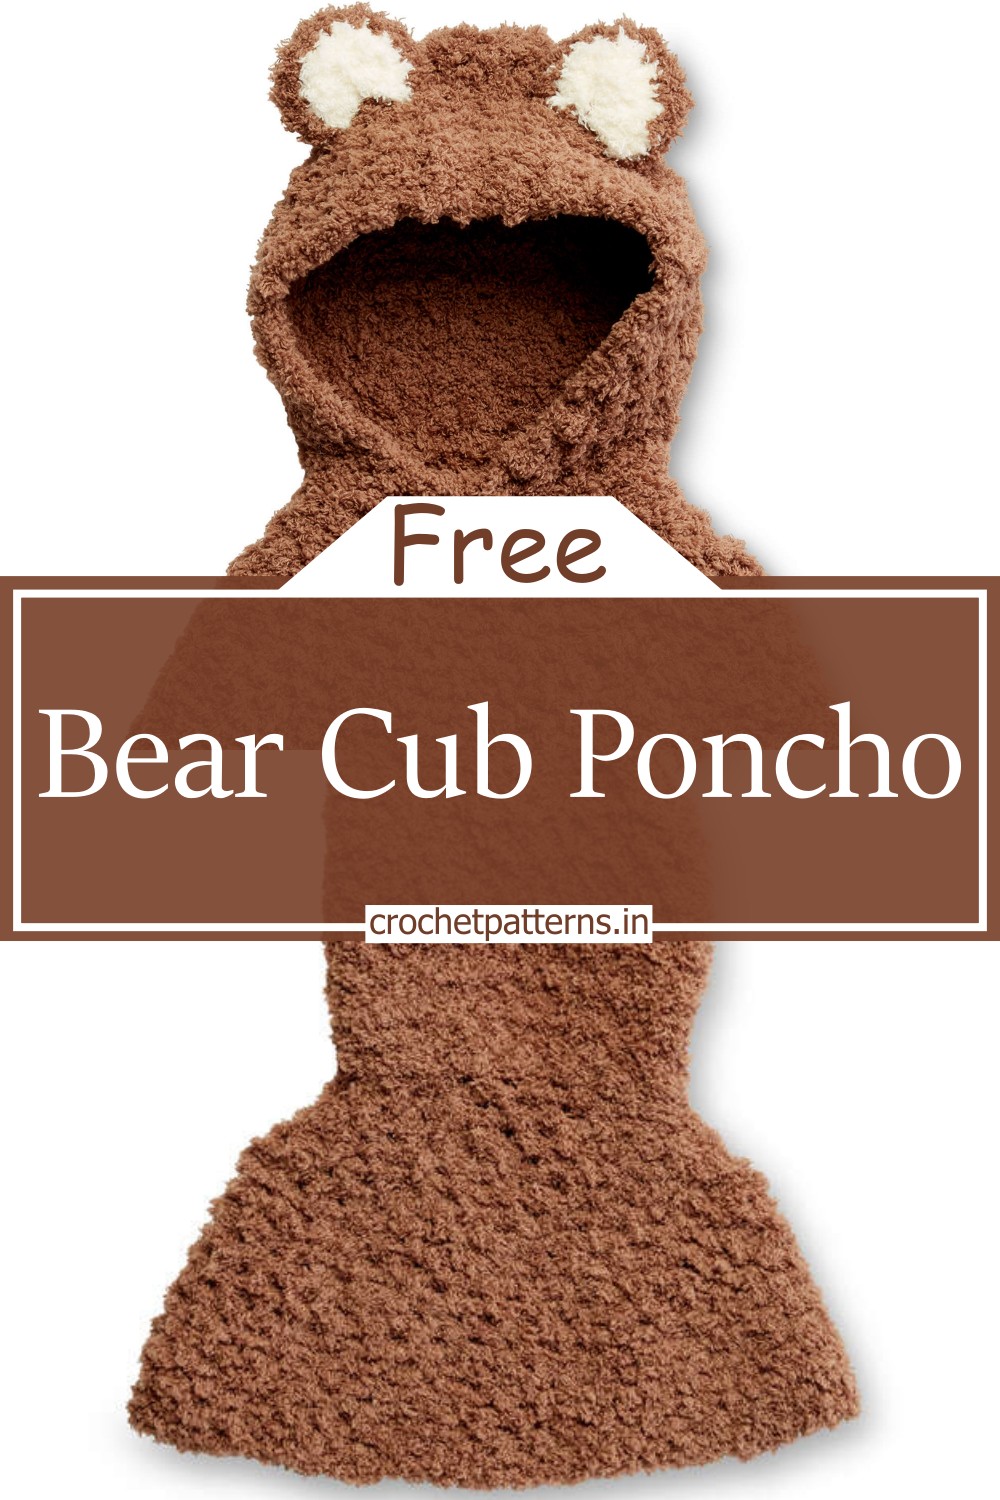 Bear Cub Poncho